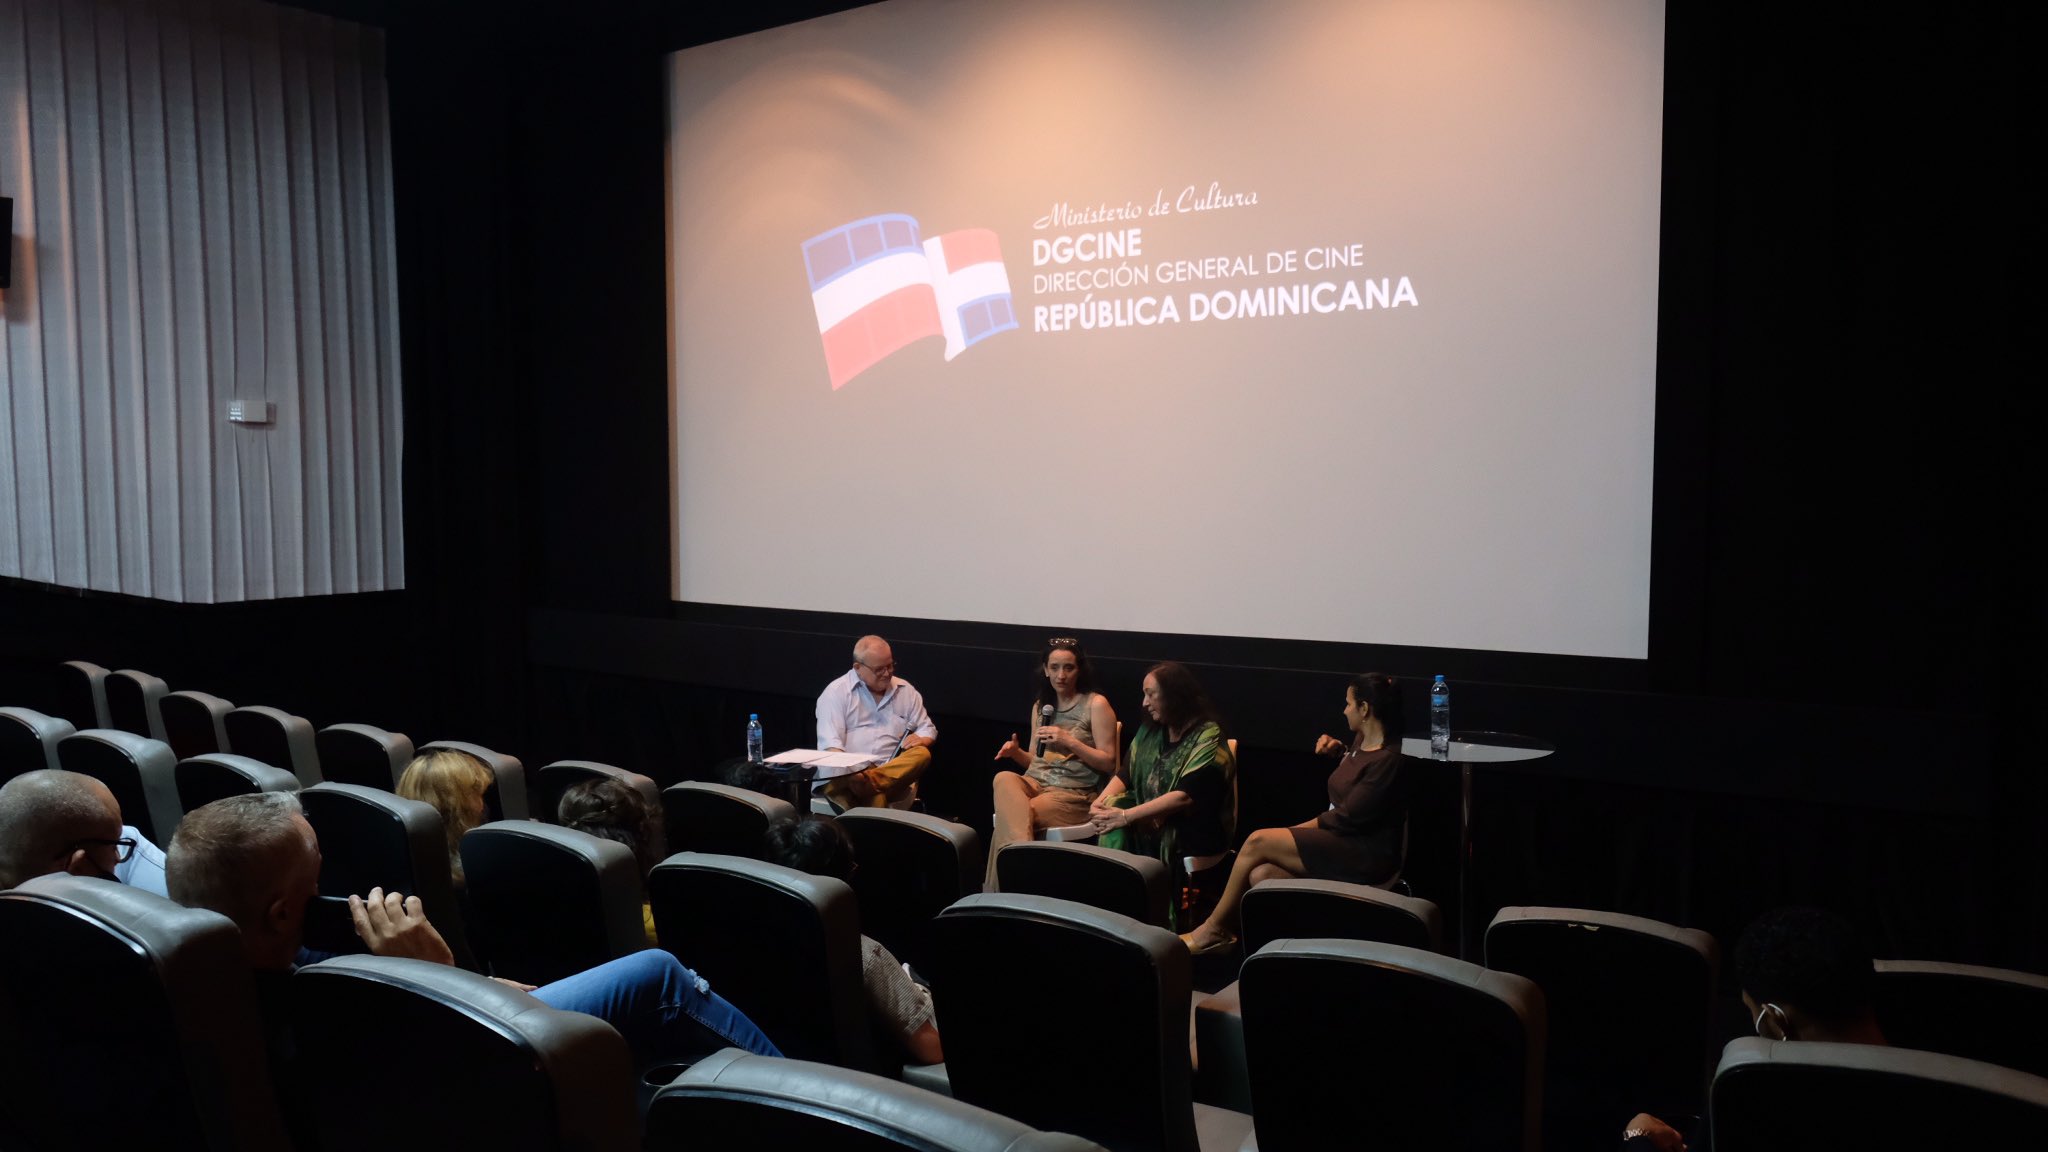 REPÚBLICA DOMINICANA: República dominicana participará en Iberseries Platino Industria